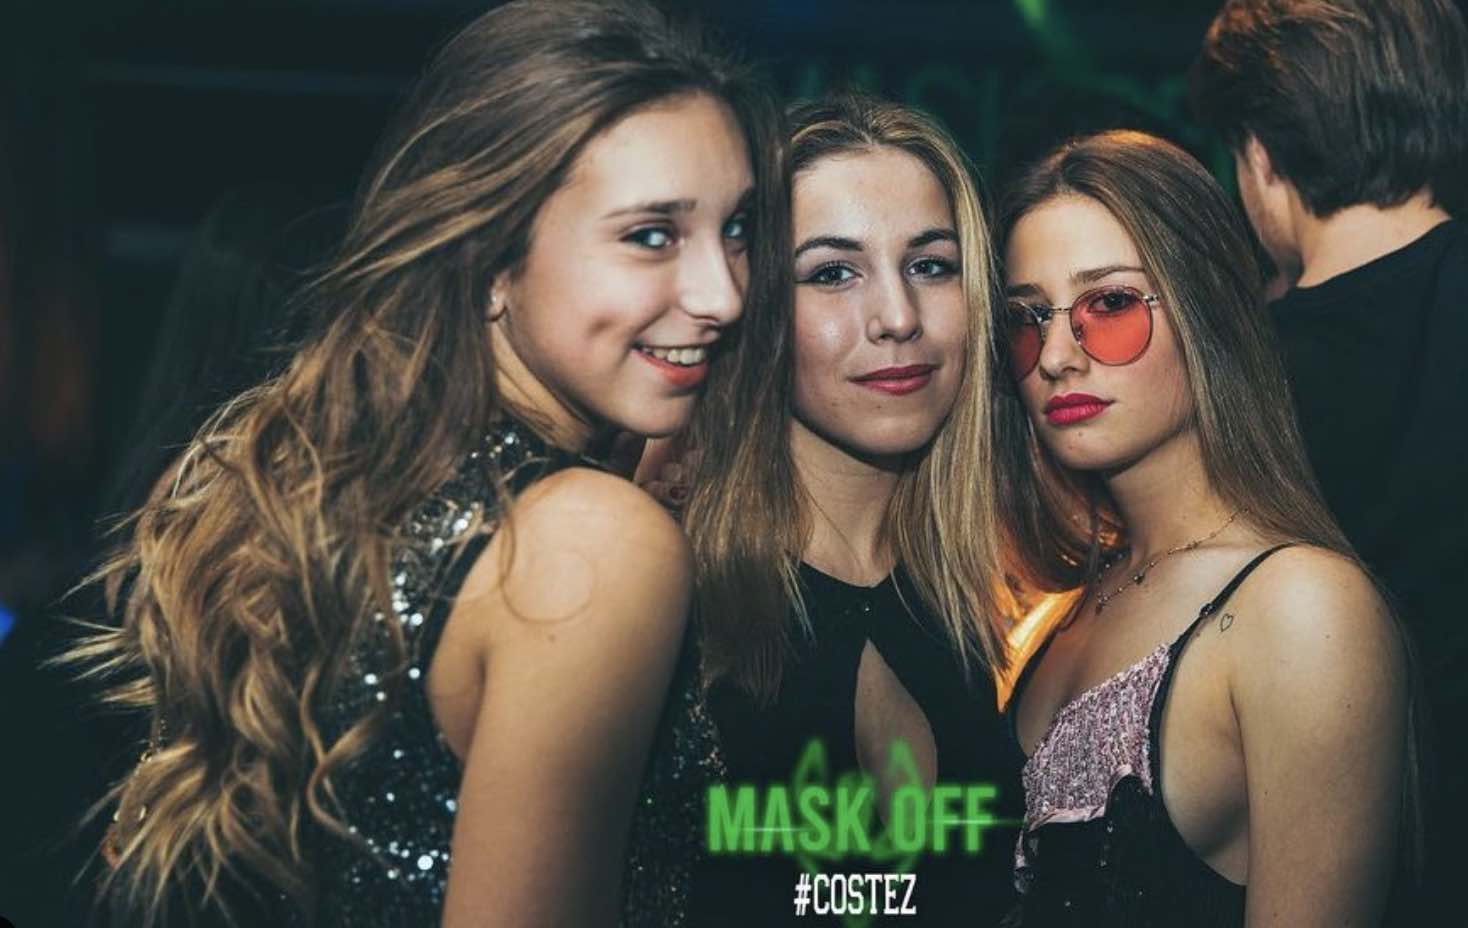 #Costez Future Club - Telgate (BG): 25/2 Mask Off + Bored Party ed il 26/2 c’è Aryfashion 